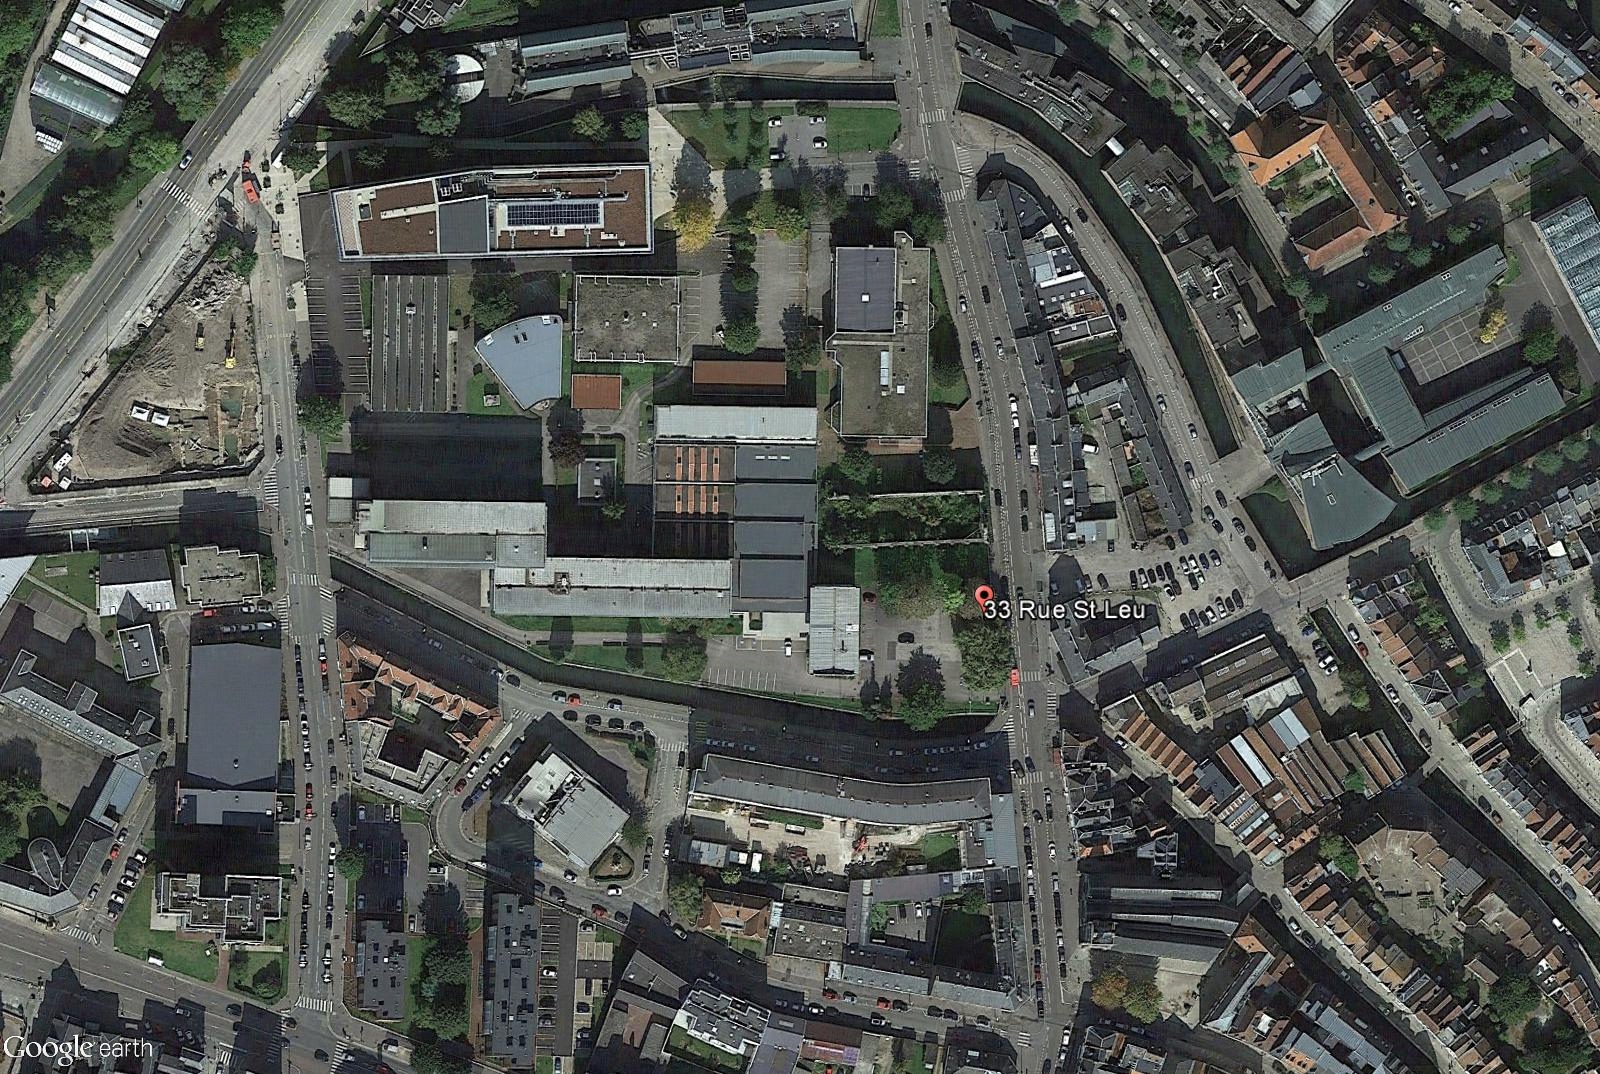 [résolu] Enregistrement image de Google earth (sans les informations) Vincen12